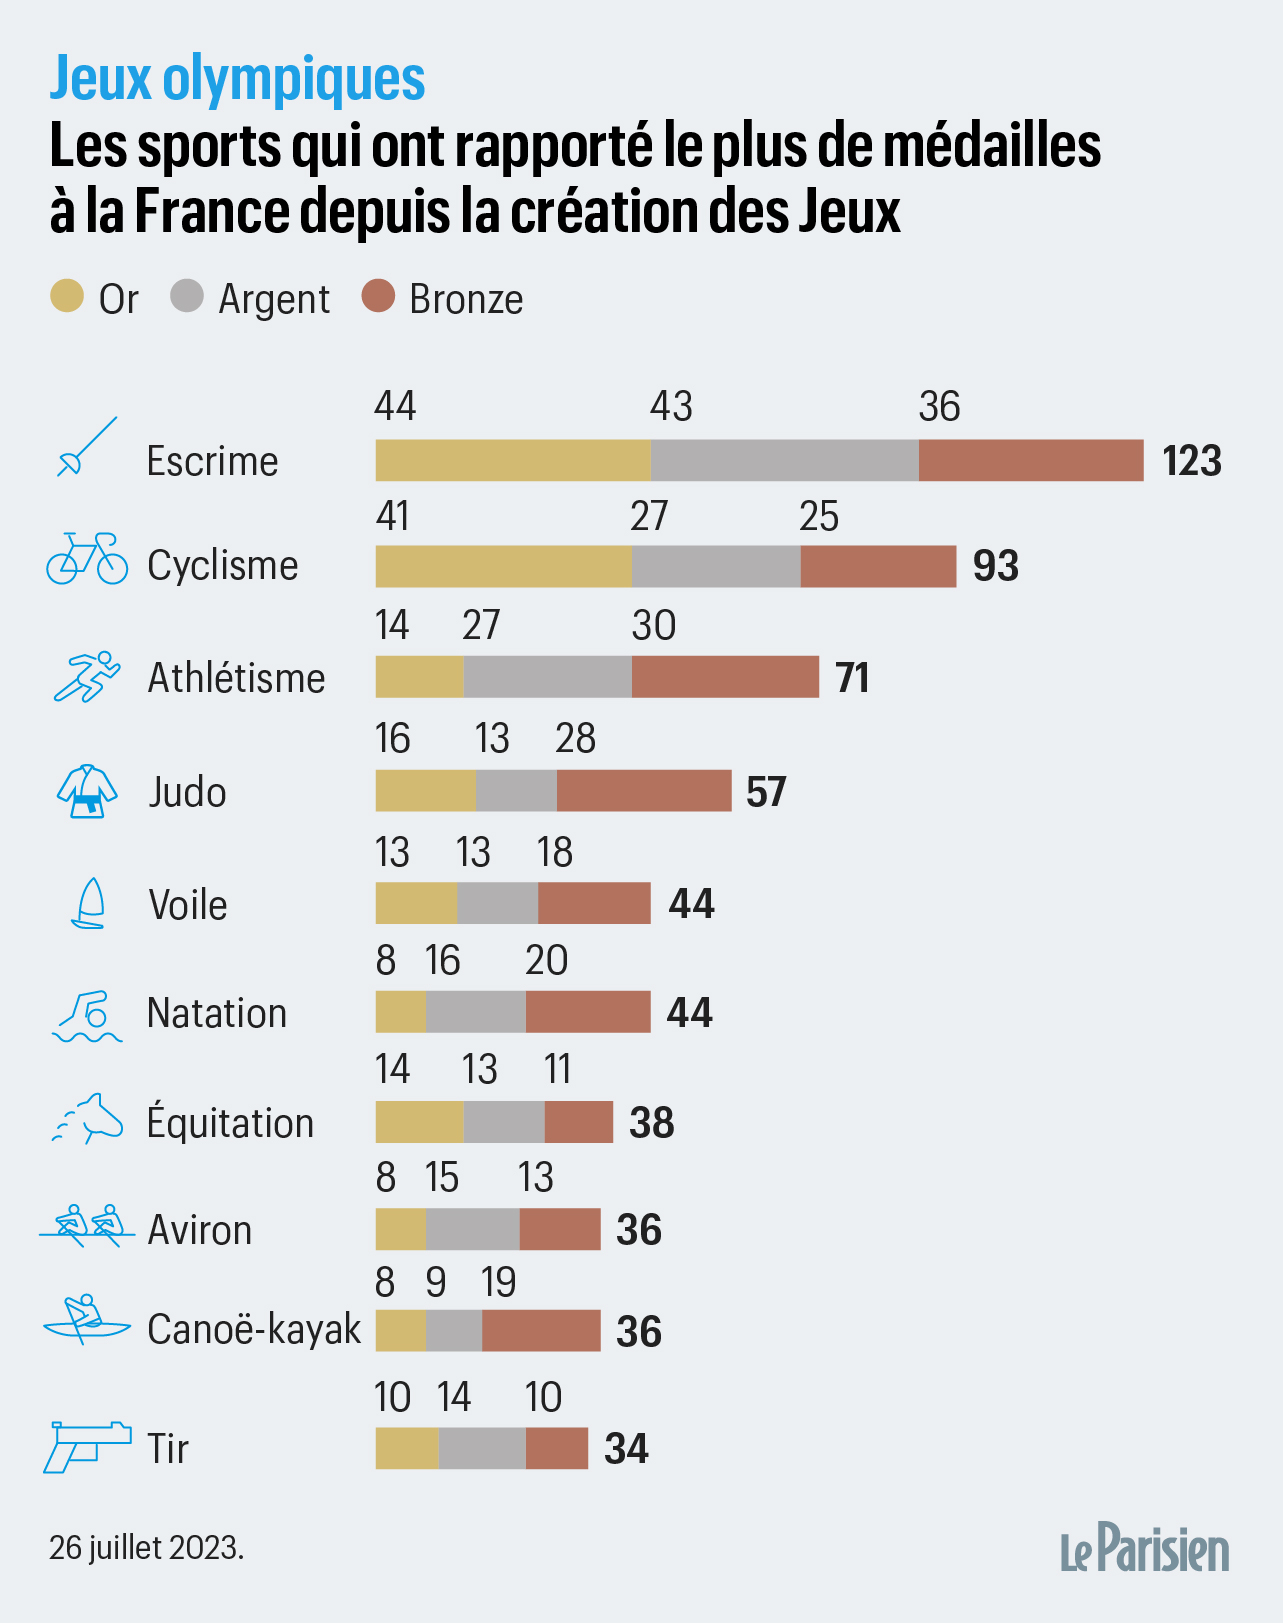 80 médailles pour la France aux JO 2024 : des projections irréalistes ?